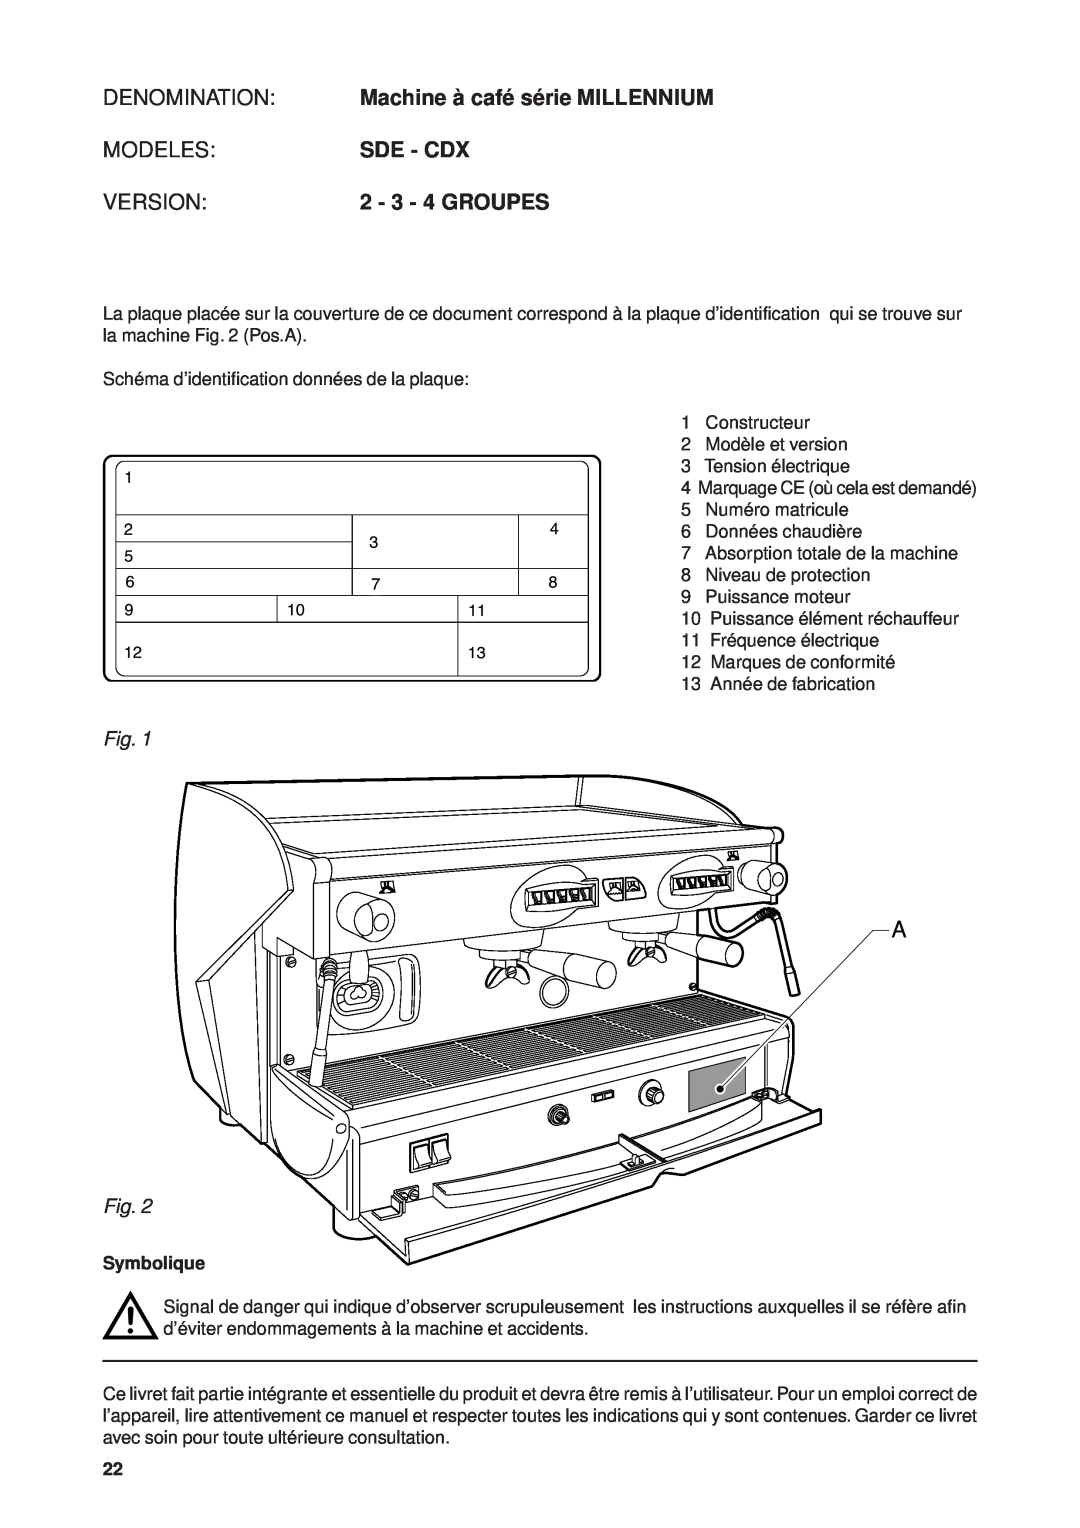 Rancilio Millennium manual DENOMINATION Machine à café série MILLENNIUM, Modelessde - Cdx, Version, 2 - 3 - 4 GROUPES 